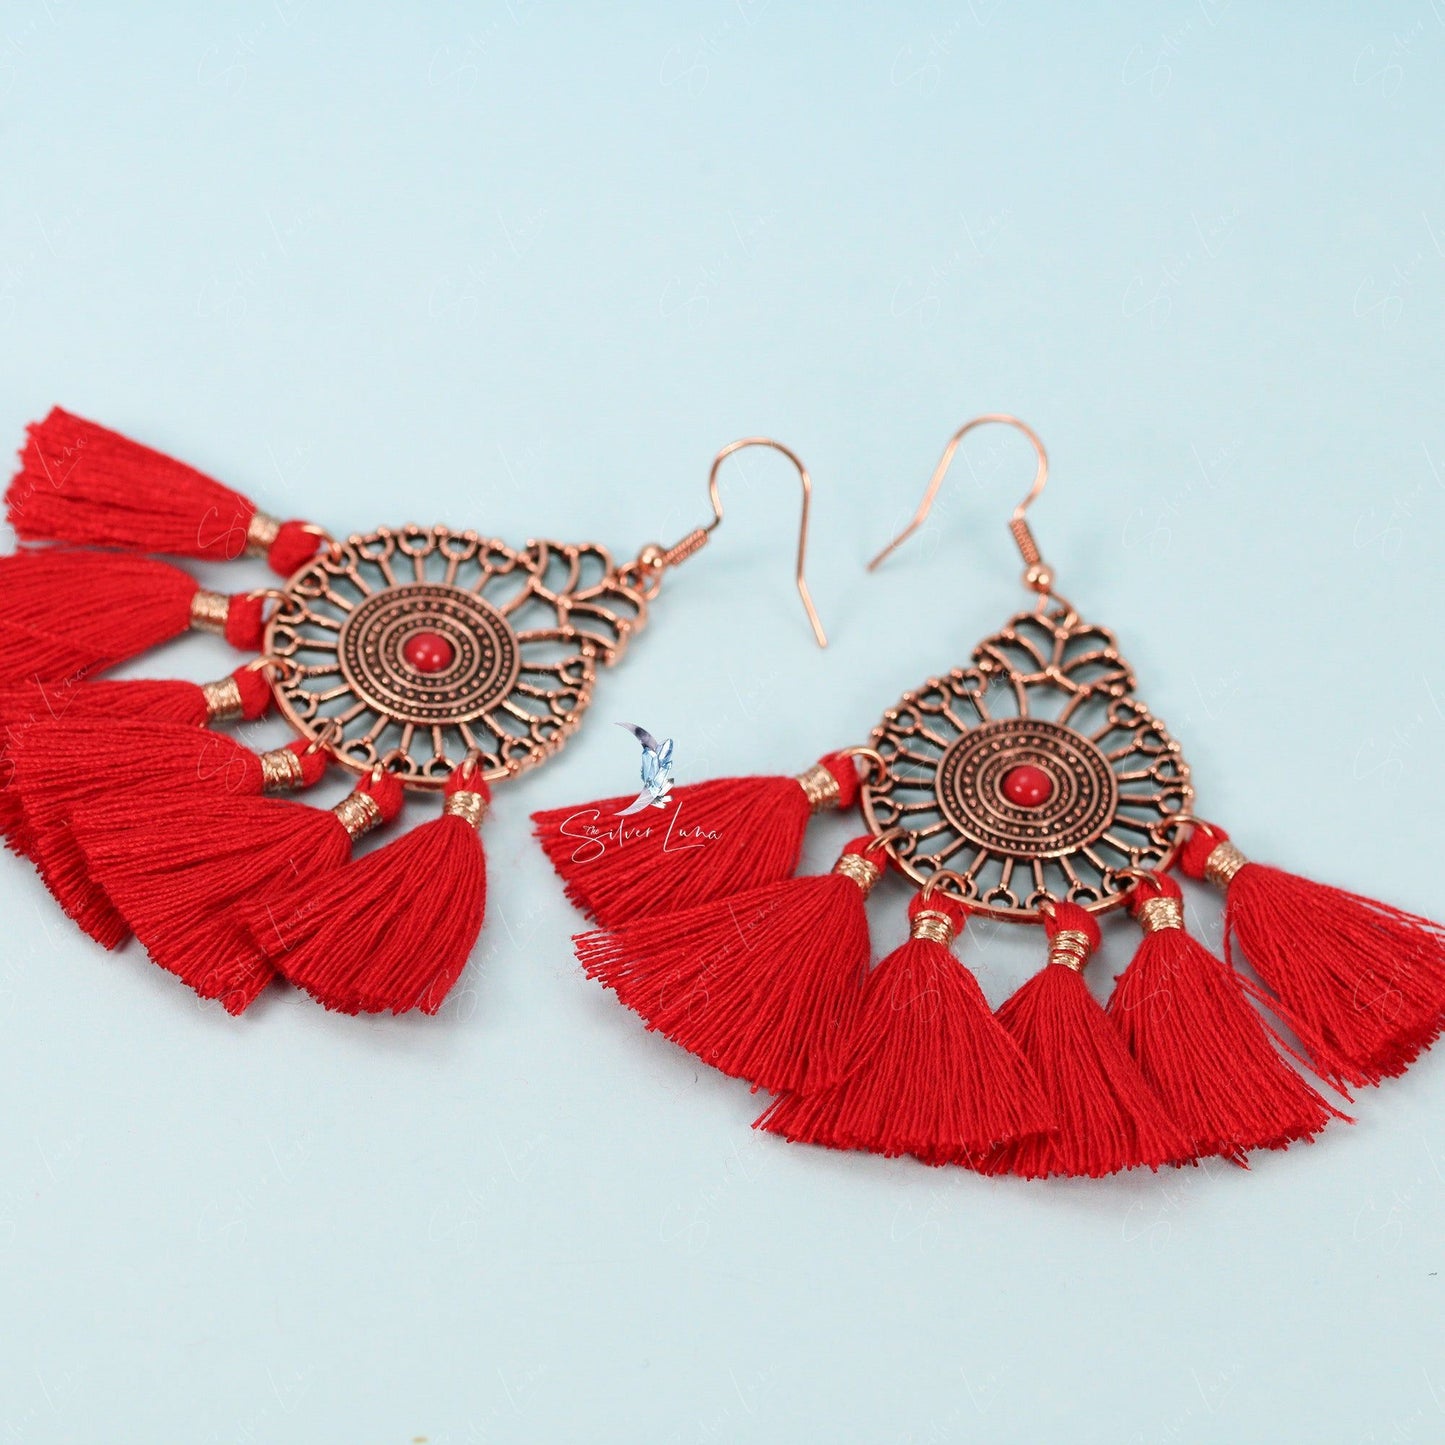 Red fan tassel statement earrings